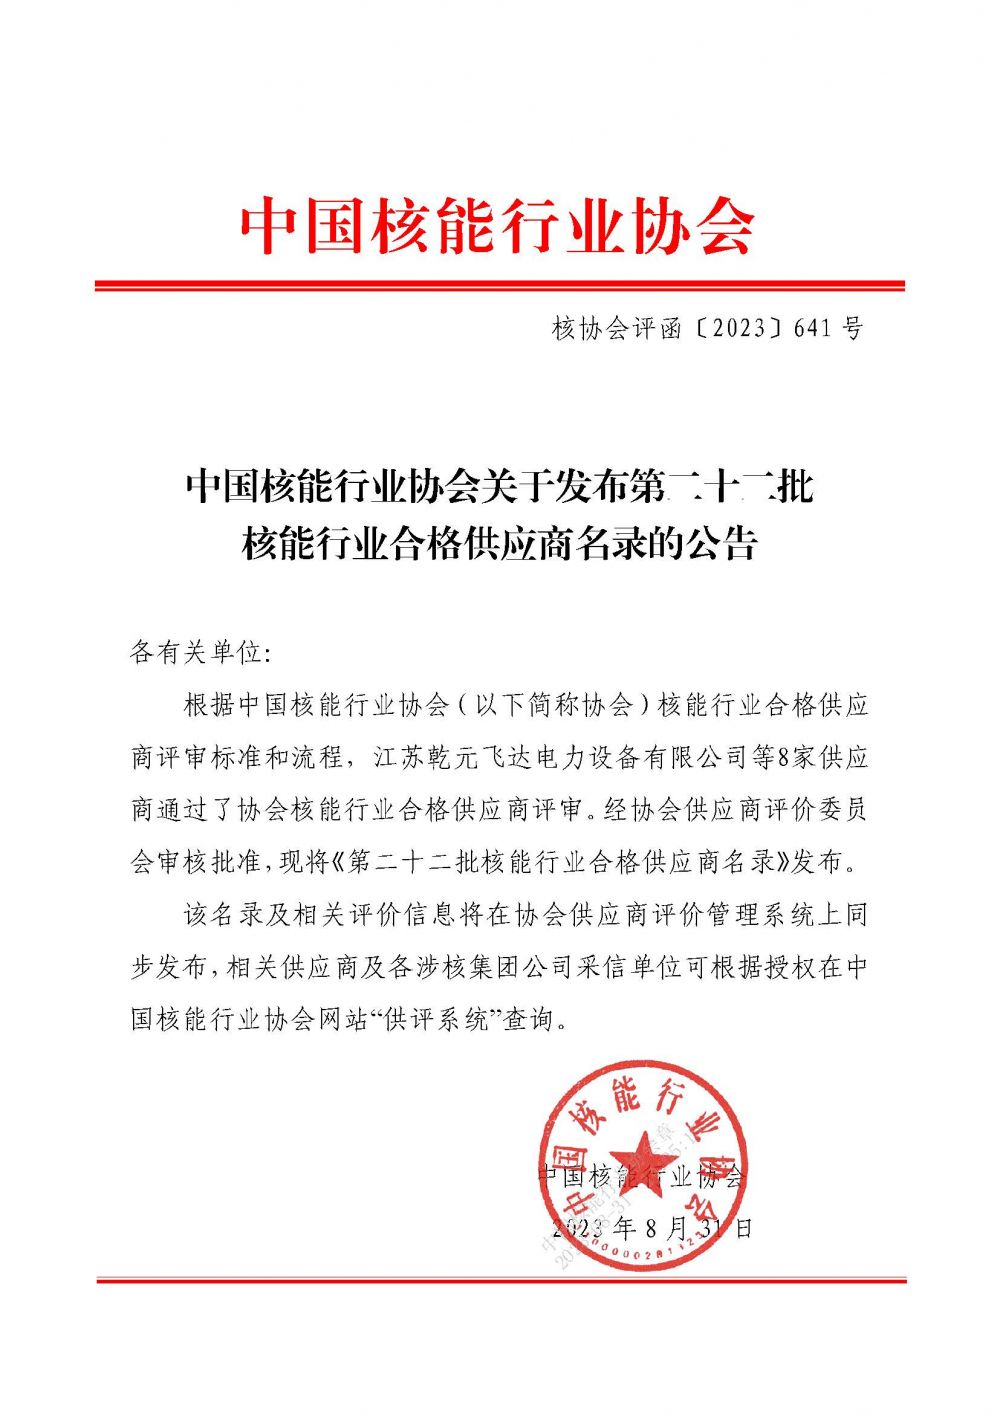 中国核能行业协会关于发布第二十二批核能行业合格供应商名录的公告_页面_1.jpg